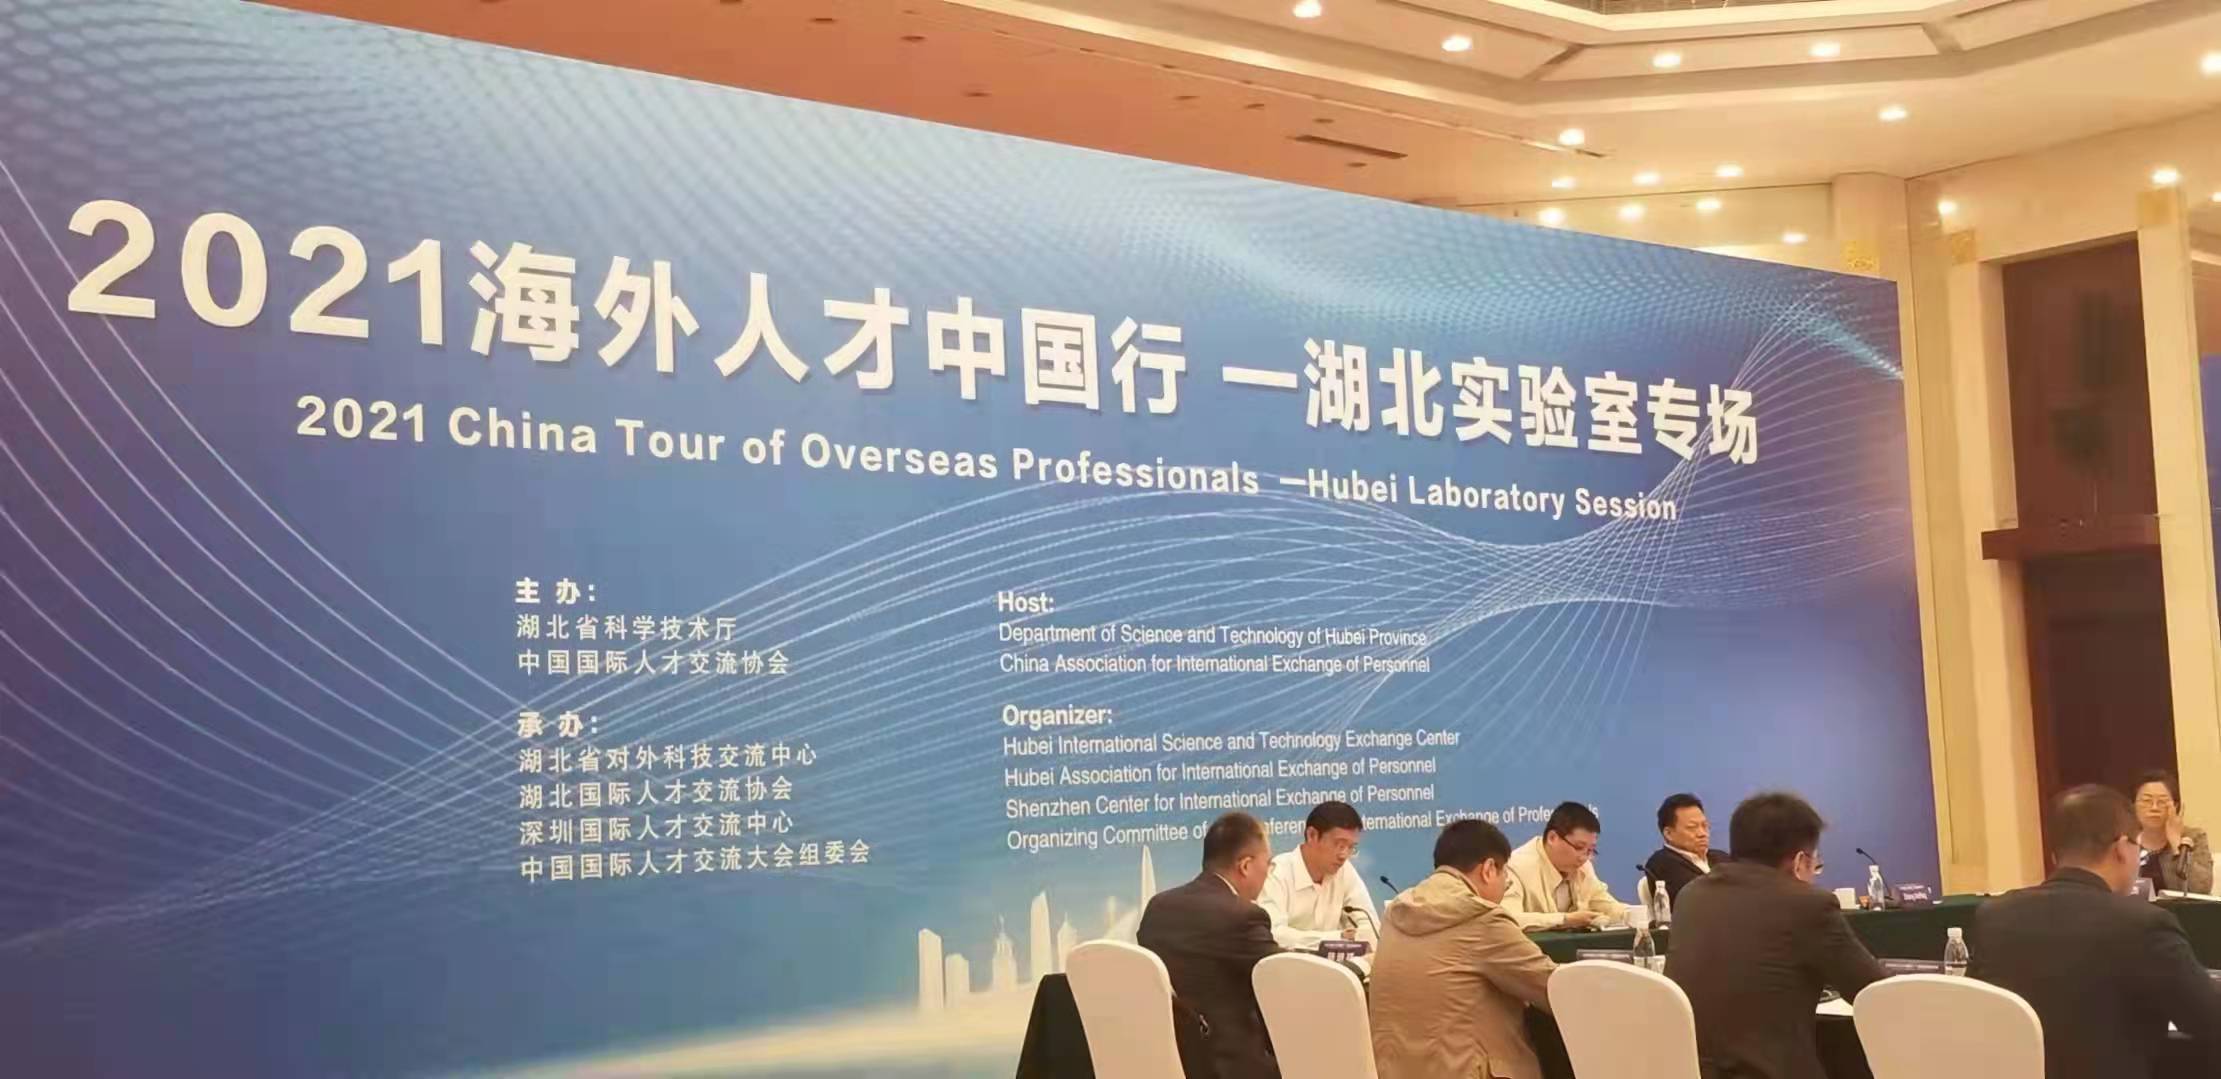 "2021海外人才中国行 "湖北实验室专场活动成功举办